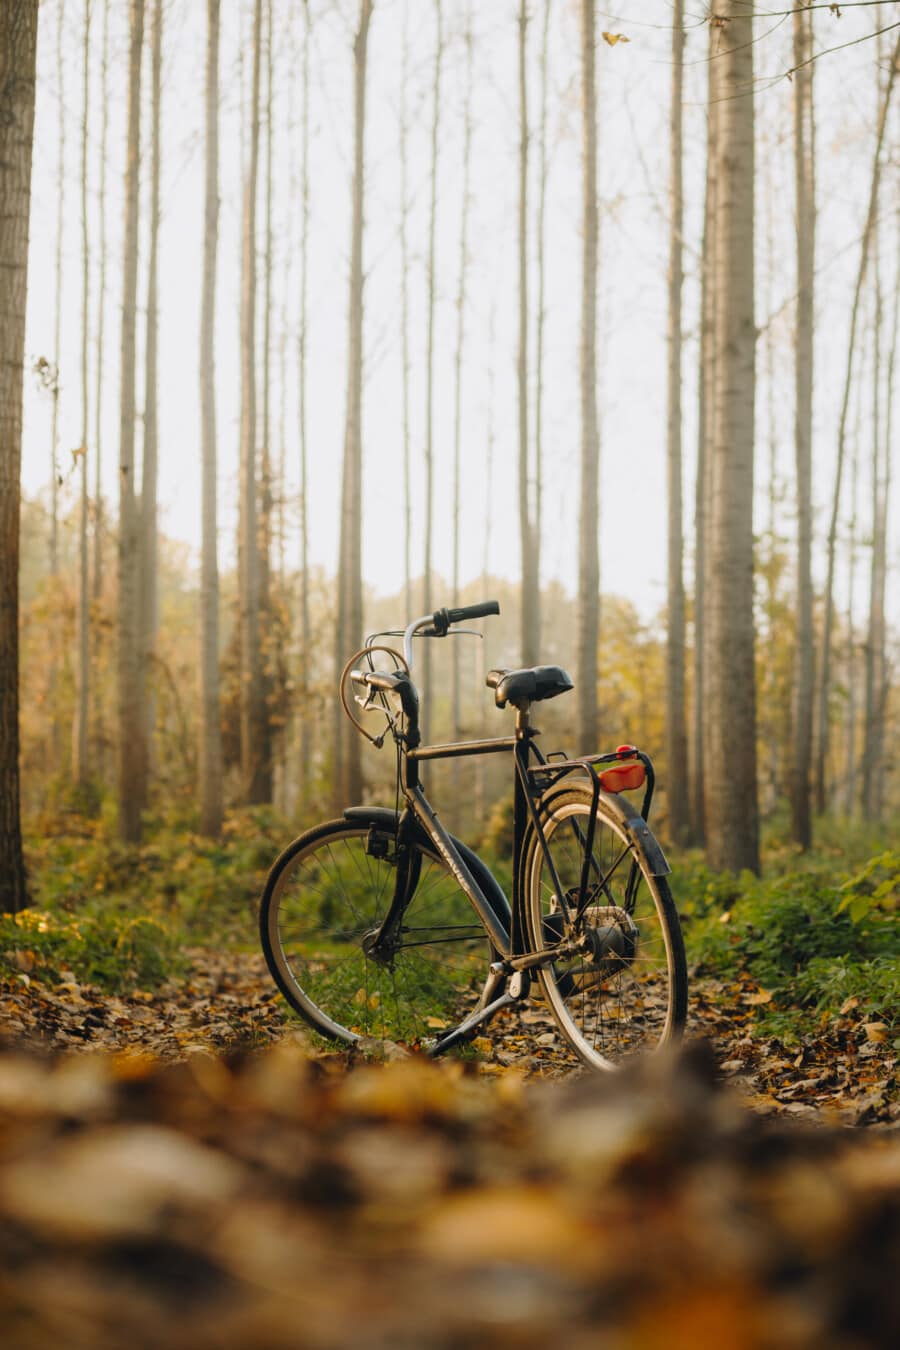 kerékpár, fekete, klasszikus, erdei ösvényen, őszi szezon, kerékpár, természet, szabadban, nyomvonal, jármű